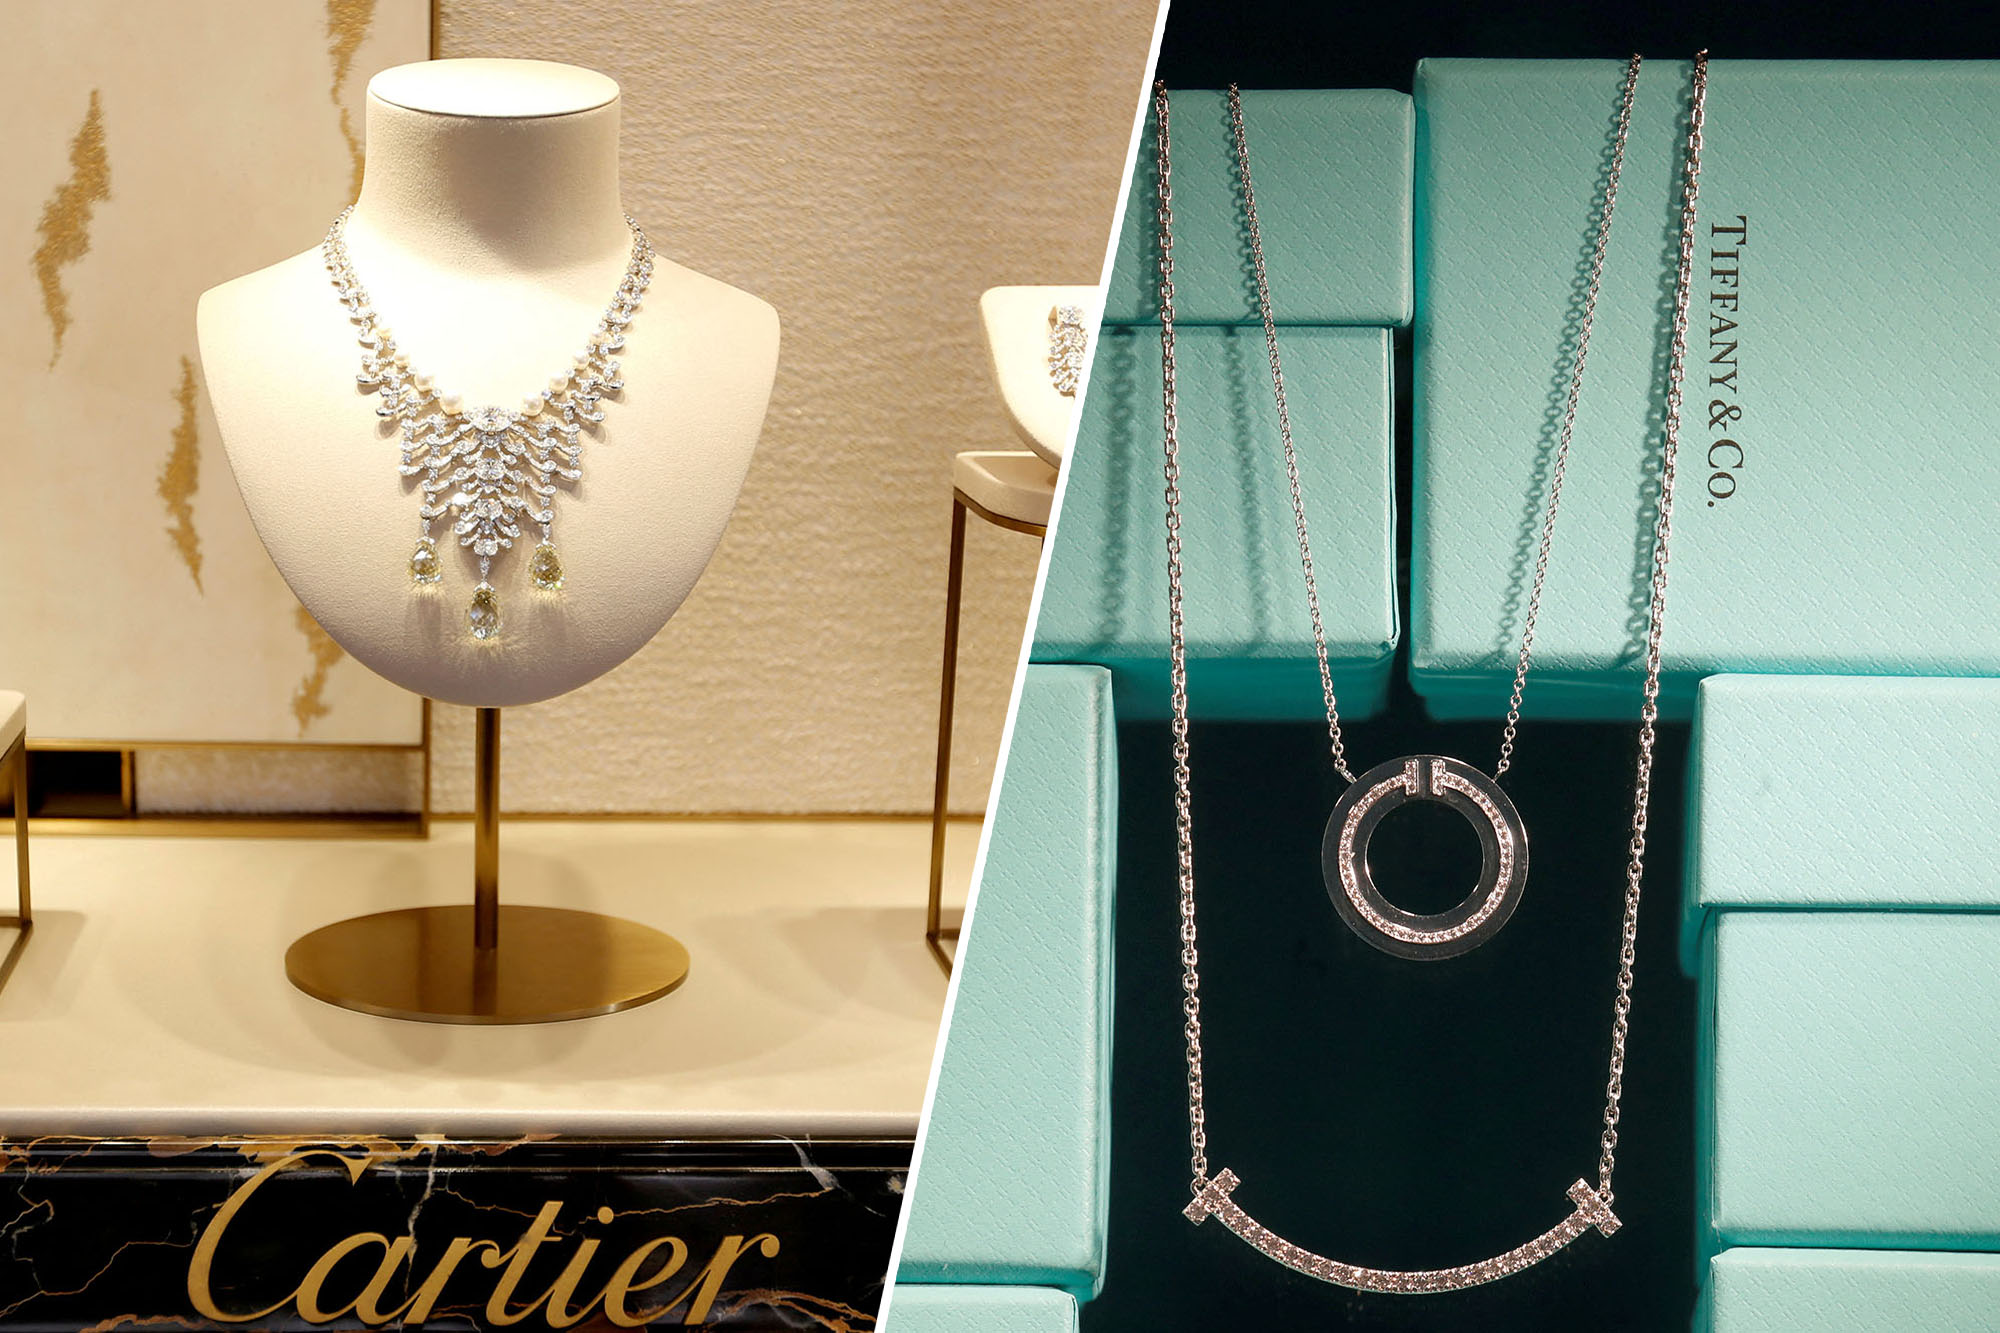 PHỐT: Cartier kiện Tiffany & Co ăn cắp bí mật thương hiệu, tiết lộ chiêu trò trí trá gian xảo - Ảnh 2.